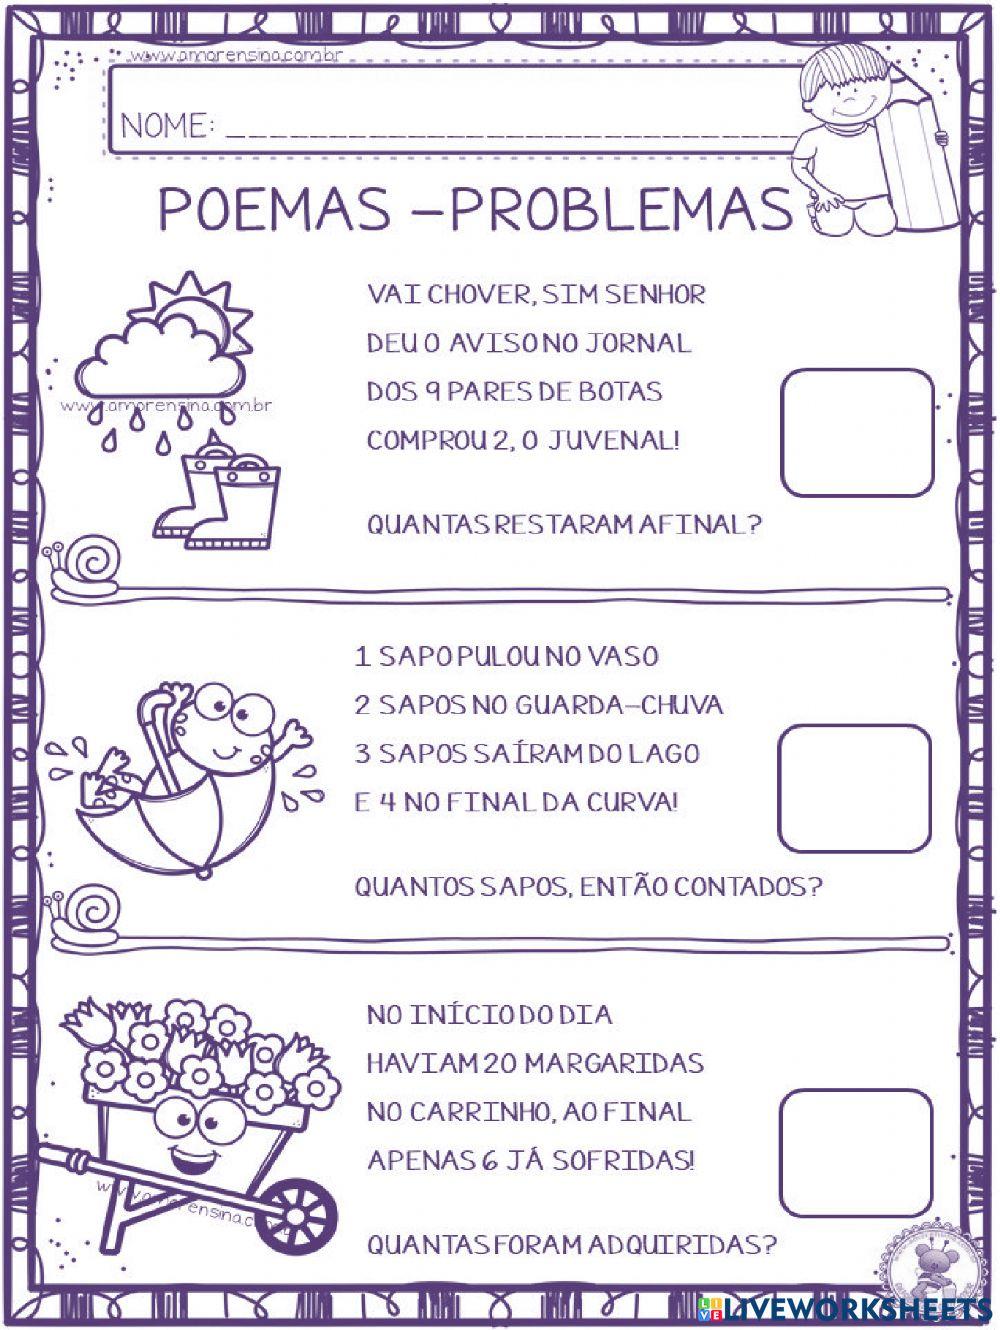 Poemas e problemas